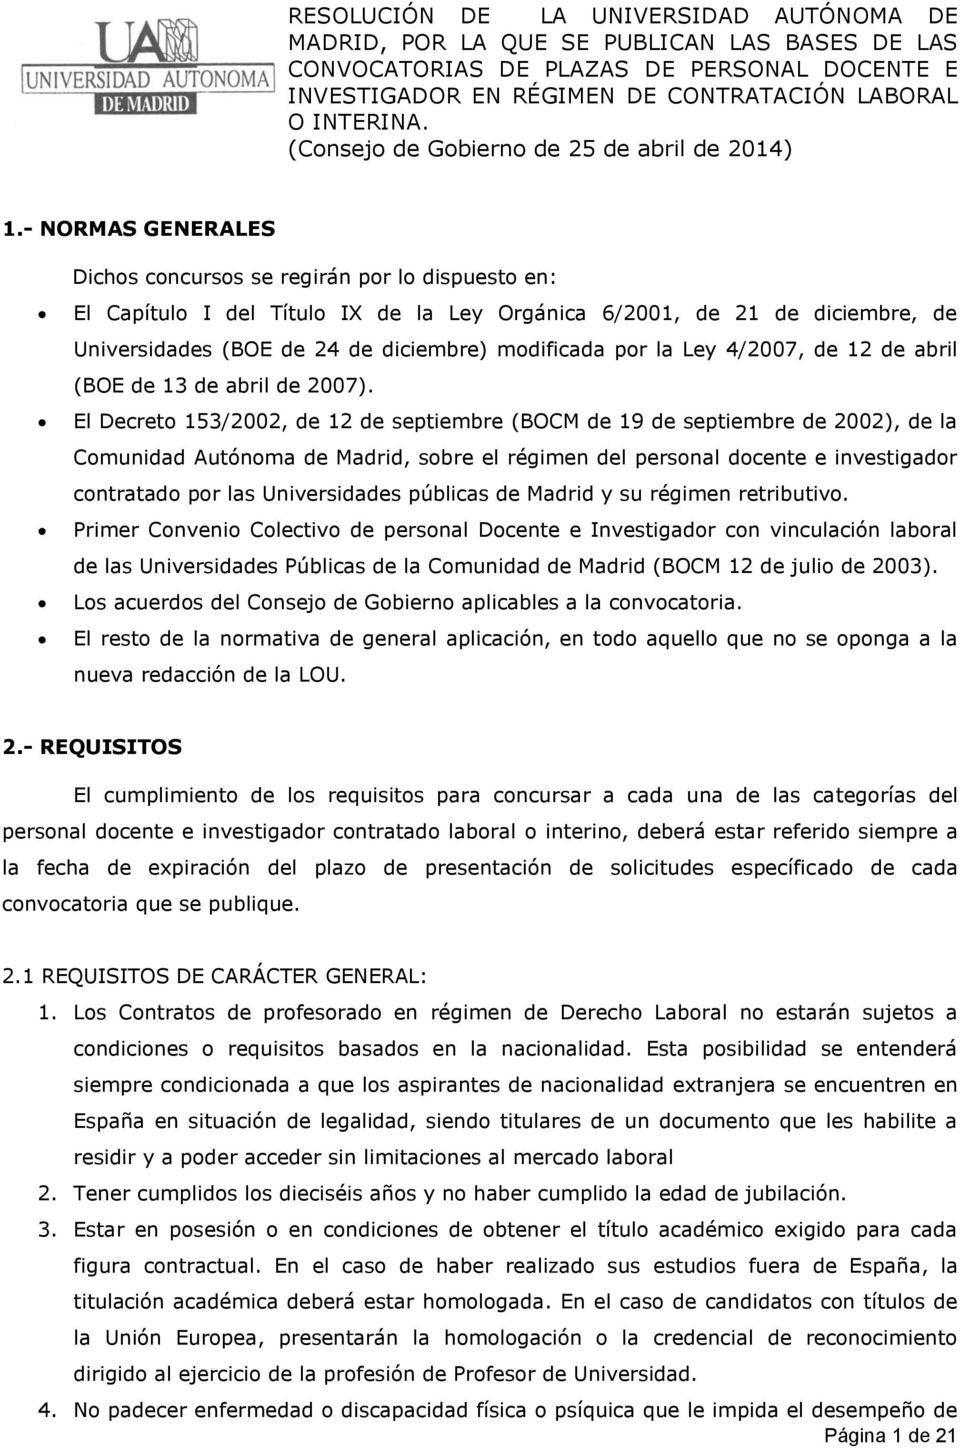 El Decreto 153/2002, de 12 de septiembre (BOCM de 19 de septiembre de 2002), de la Comunidad Autónoma de Madrid, sobre el régimen del personal docente e investigador contratado por las Universidades